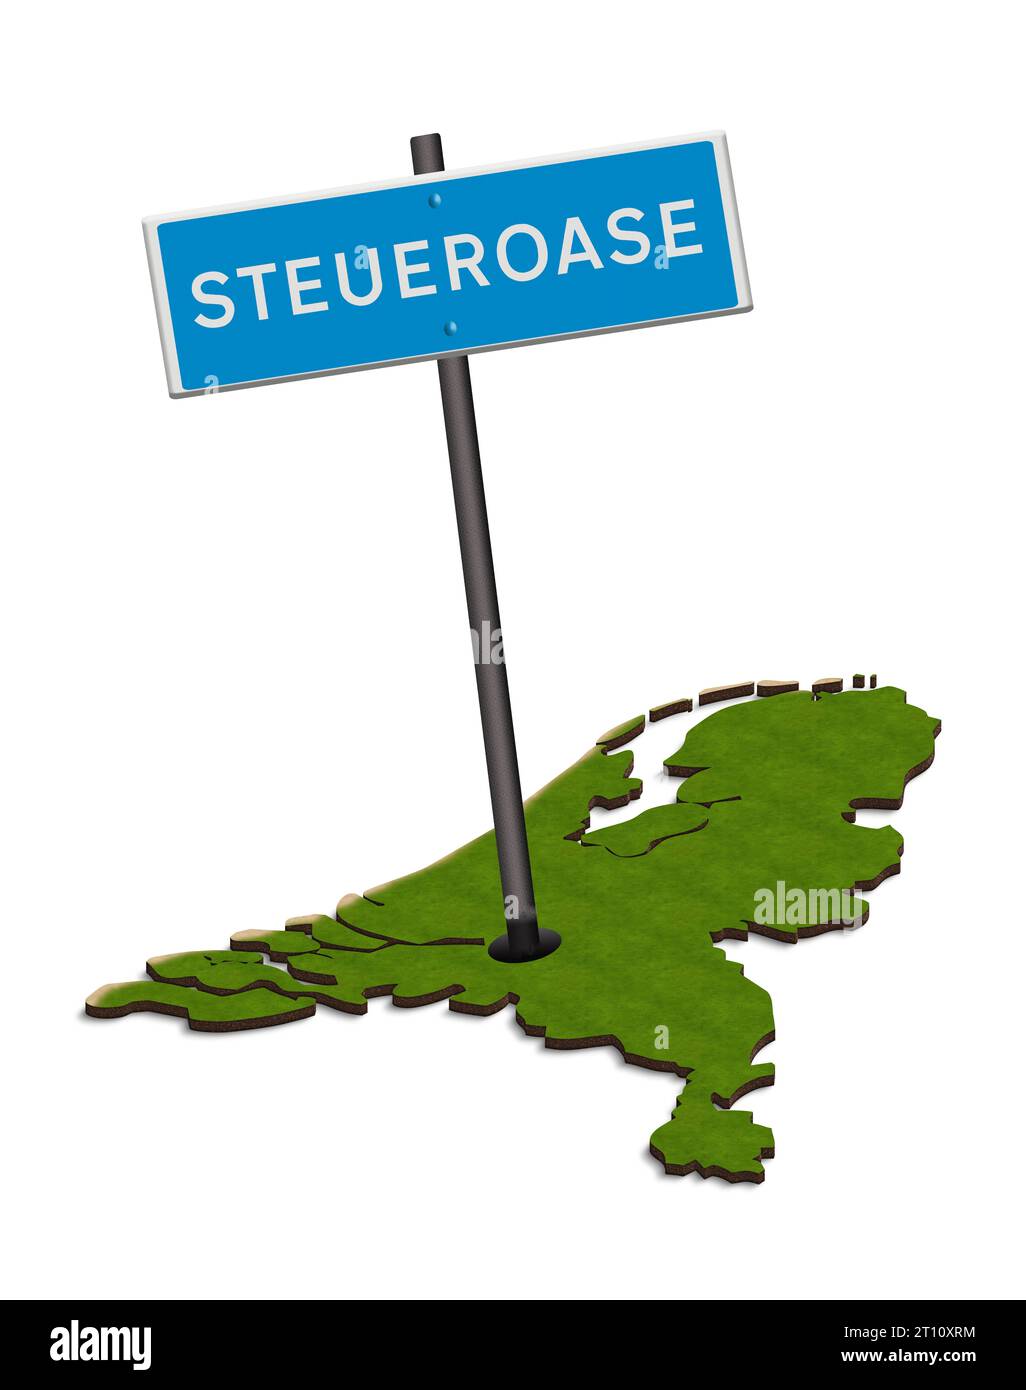 Abbildung - Verkehrszeichen Steueroase mit Karte der Niederlande. Die Niederlande werden häufig als Steueroase für Körperschaftsteuerzwecke angesehen. Innerhalb des Landes wird kritisiert, dass die Bürger zahlen, während Unternehmen eine kostenlose Fahrt erhalten. Quelle: Imago/Alamy Live News Stockfoto